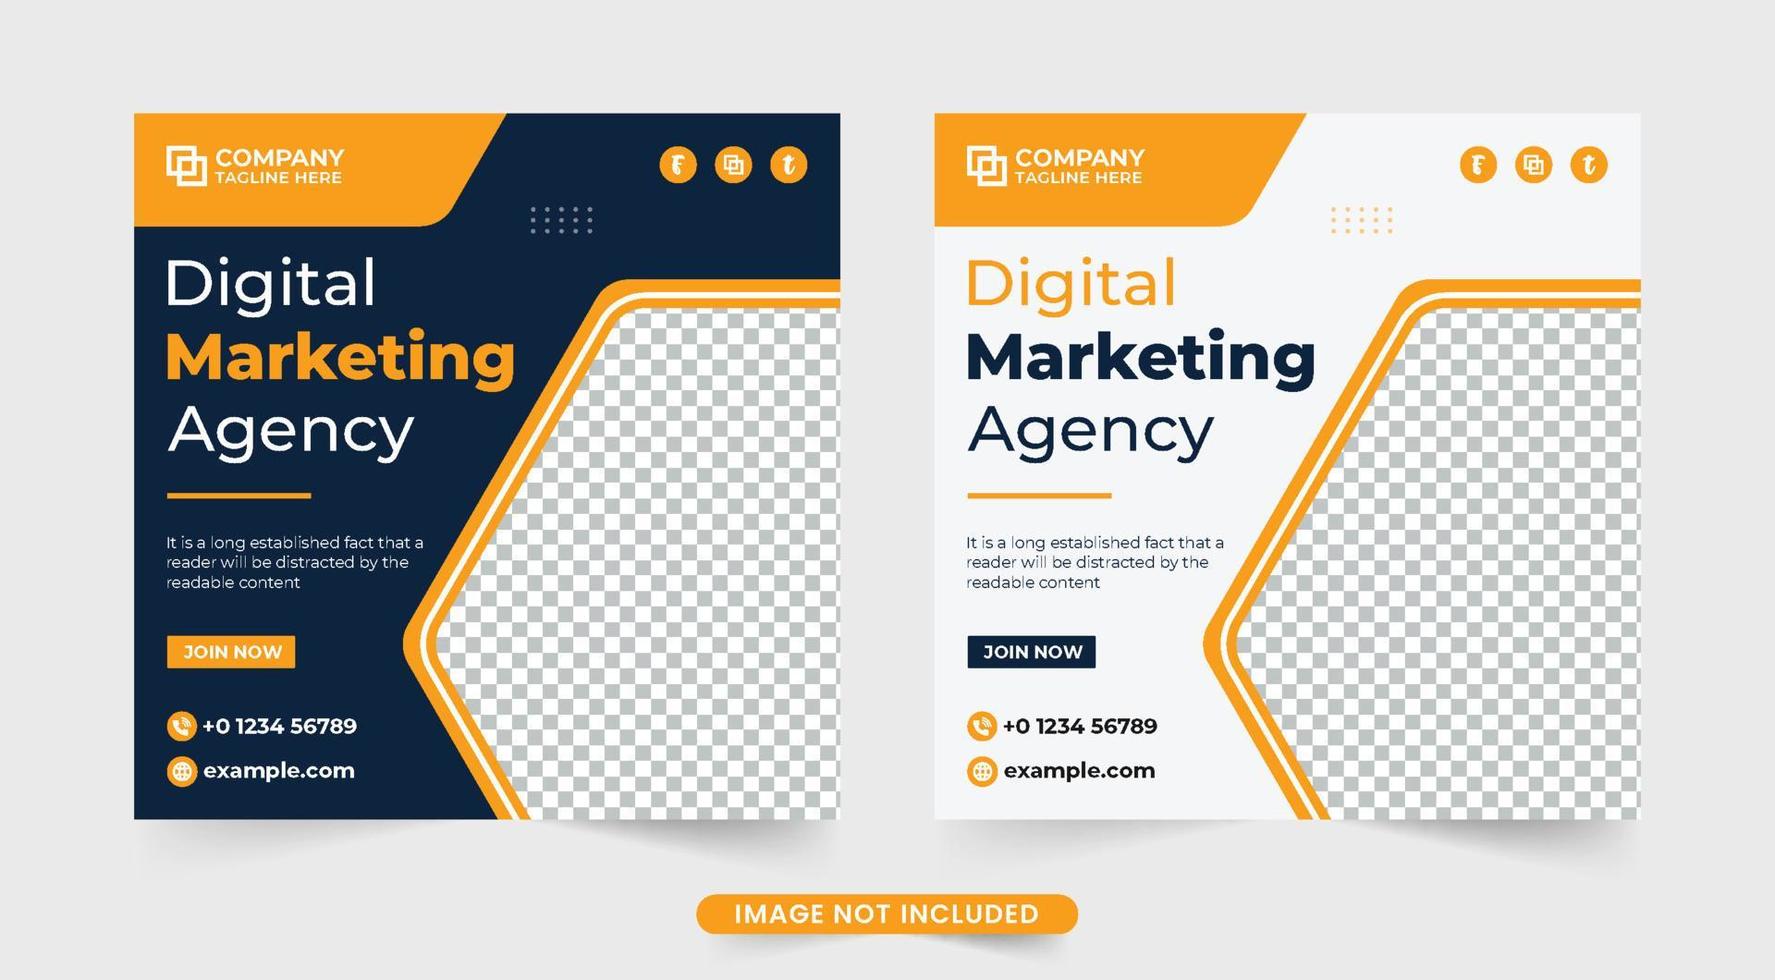 modelo de agência de negócios digital para marketing de mídia social. banner web de agência de marketing corporativo projetado com cores escuras e amarelas. vetor de modelo promocional de agência de negócios.